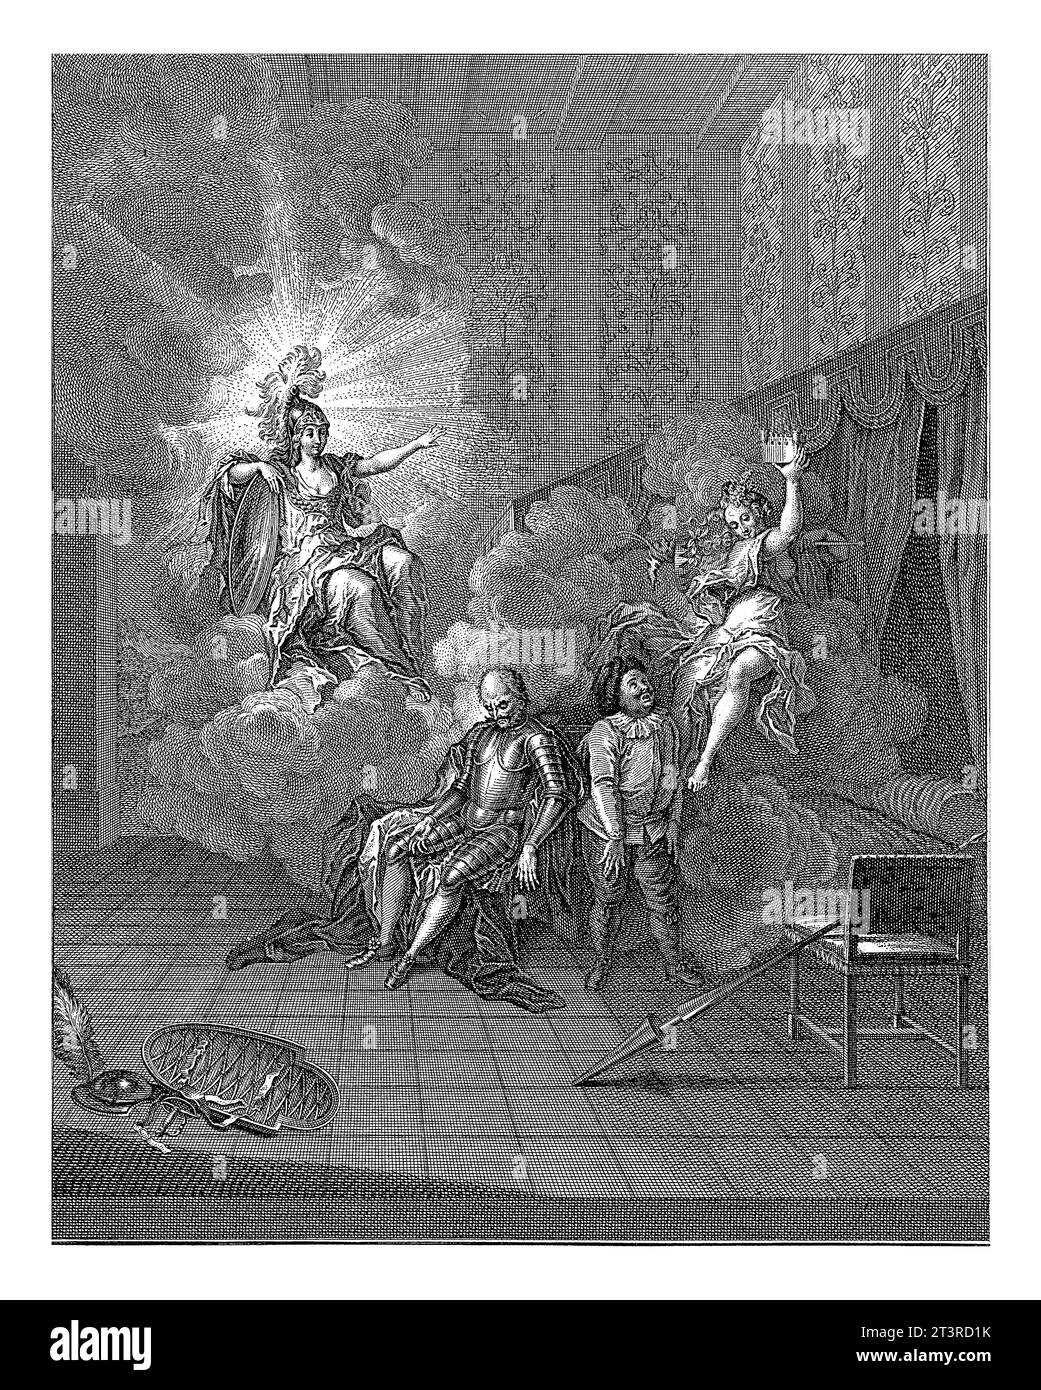 Weisheit jagt Folly, Jacob van der Schley, nach Charles-Antoine Coypel, 1742 Eine Personifikation der Weisheit jagt eine Personifikation der Folly, während Don Stockfoto